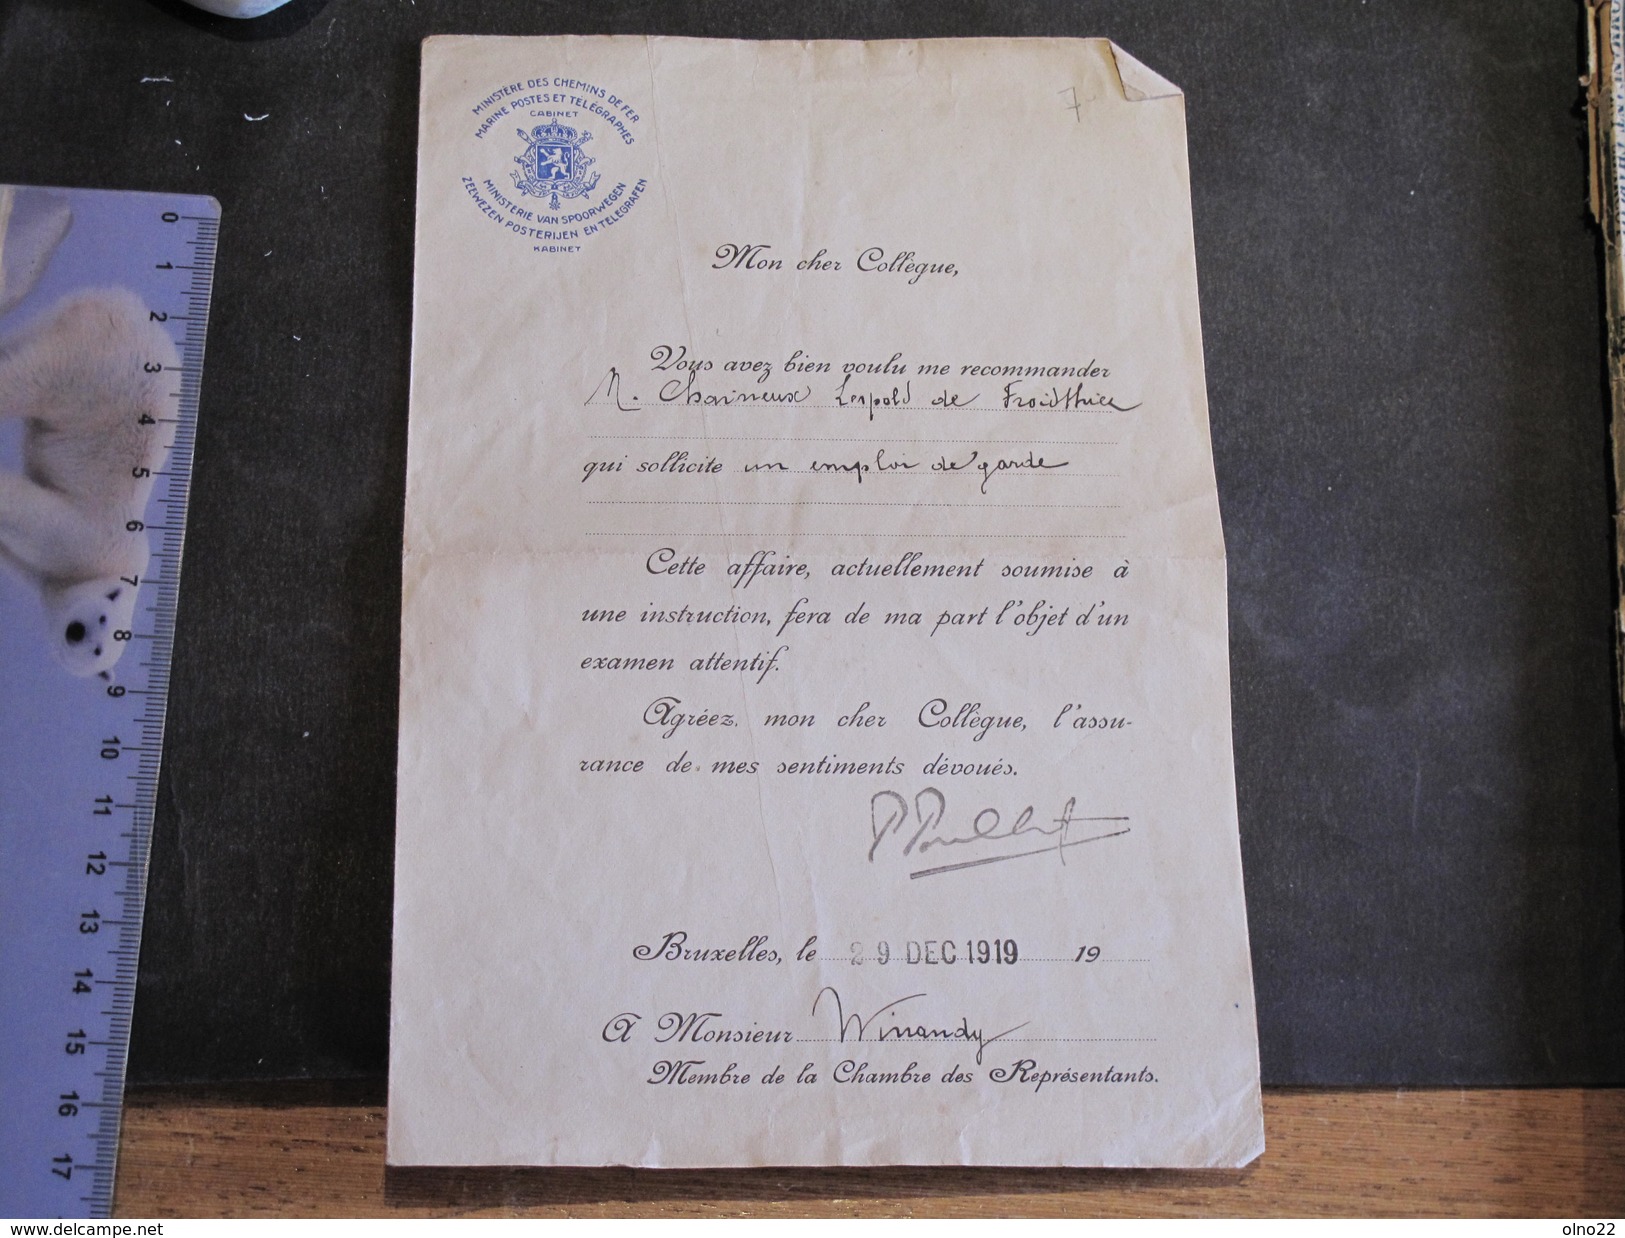 FROIDTHIER- Lettre De Recommandation De M WINANDY Relative à Un Emploi De Garde Pour CHAINEUX Léopold 29/128/19 - Manuskripte